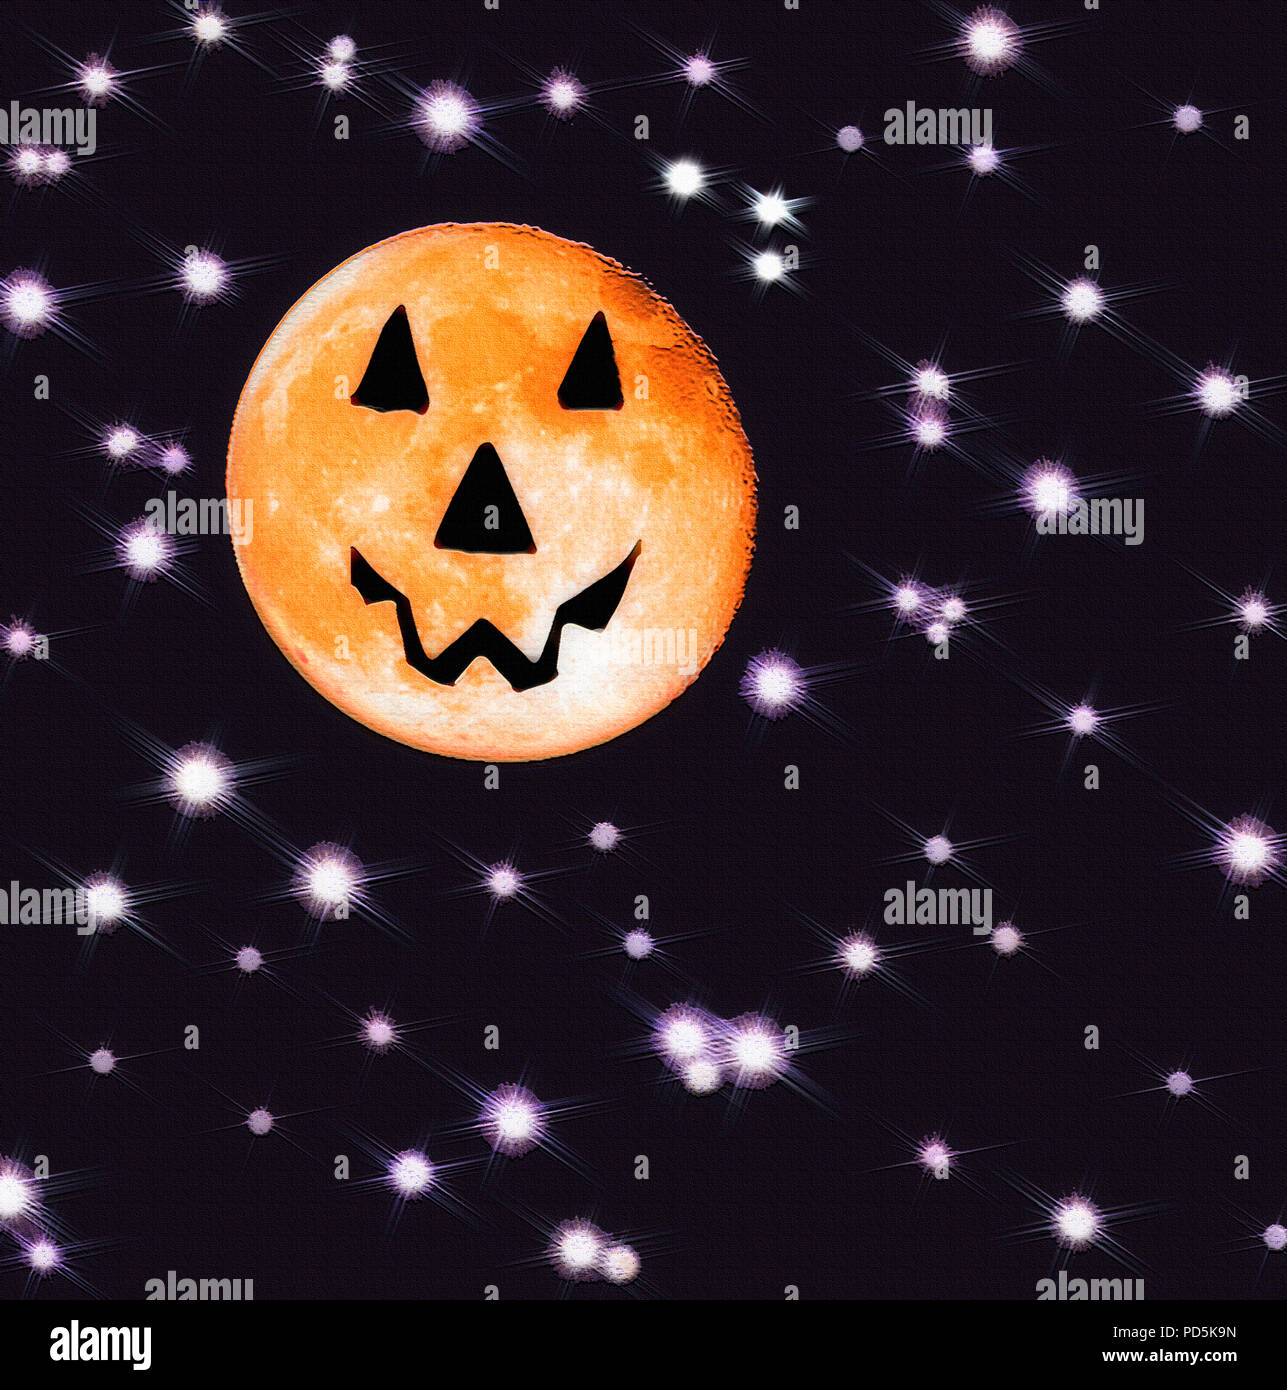 Adottate il 1 ottobre 2012 sulla terza notte di Harvest Moon intorno a 9:30 pm nell'emisfero settentrionale, Utah, Stati Uniti d'America. Naturalmente, la luna non era thi Foto Stock